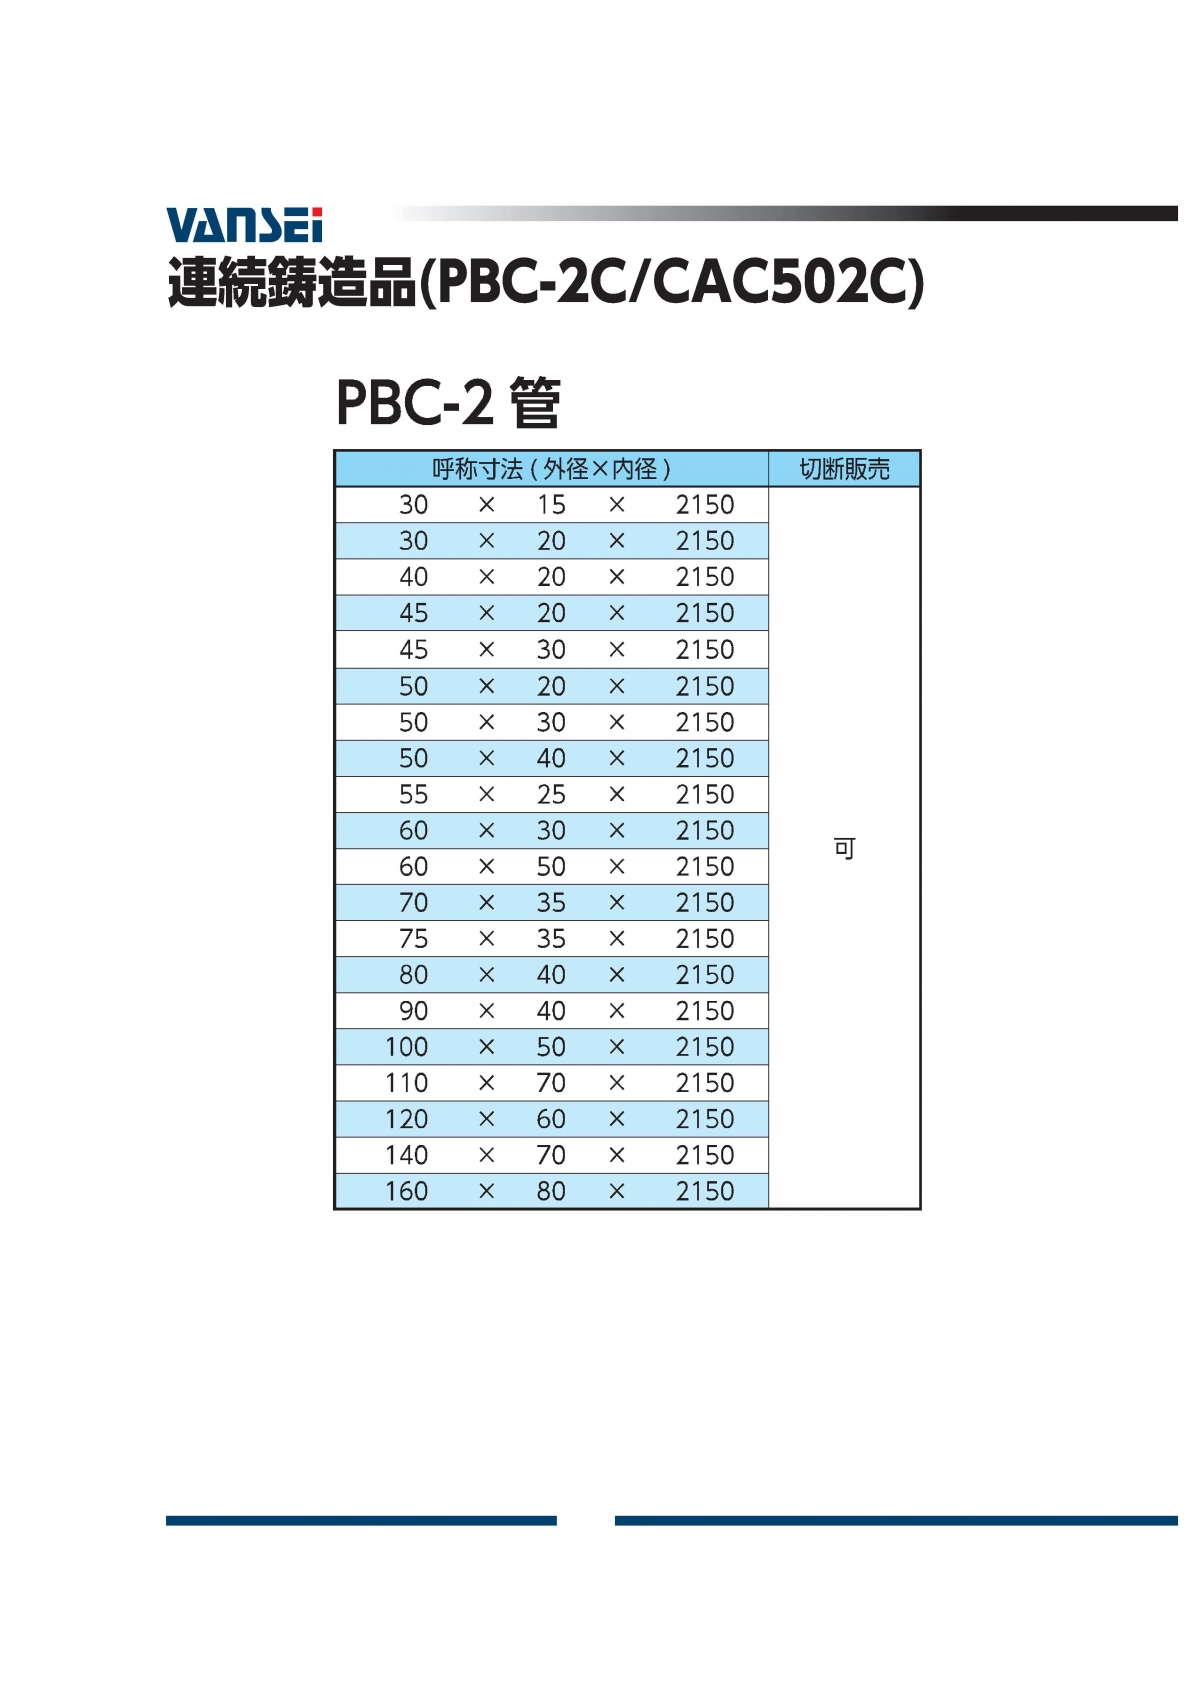 PBC-2パイプ(CAC502C)